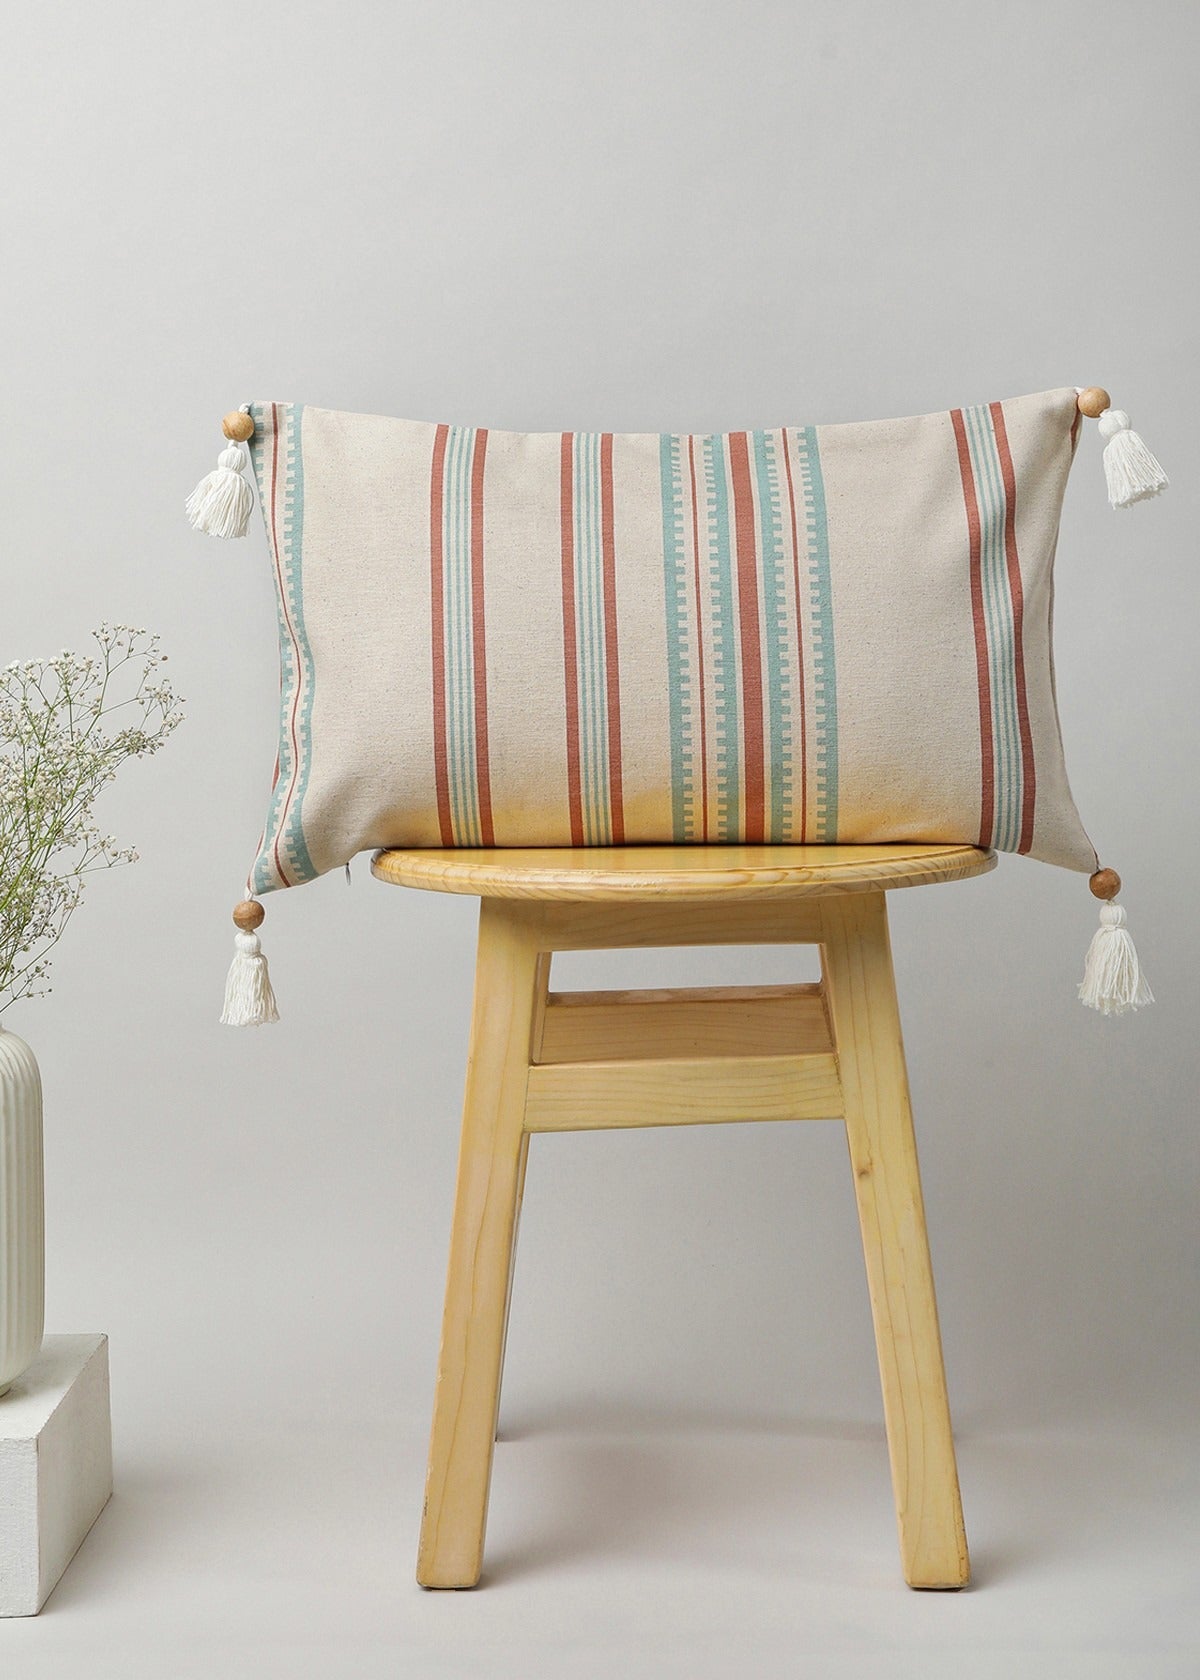 Roman Stripes Printed Cotton Cushion Cover - Multicolor